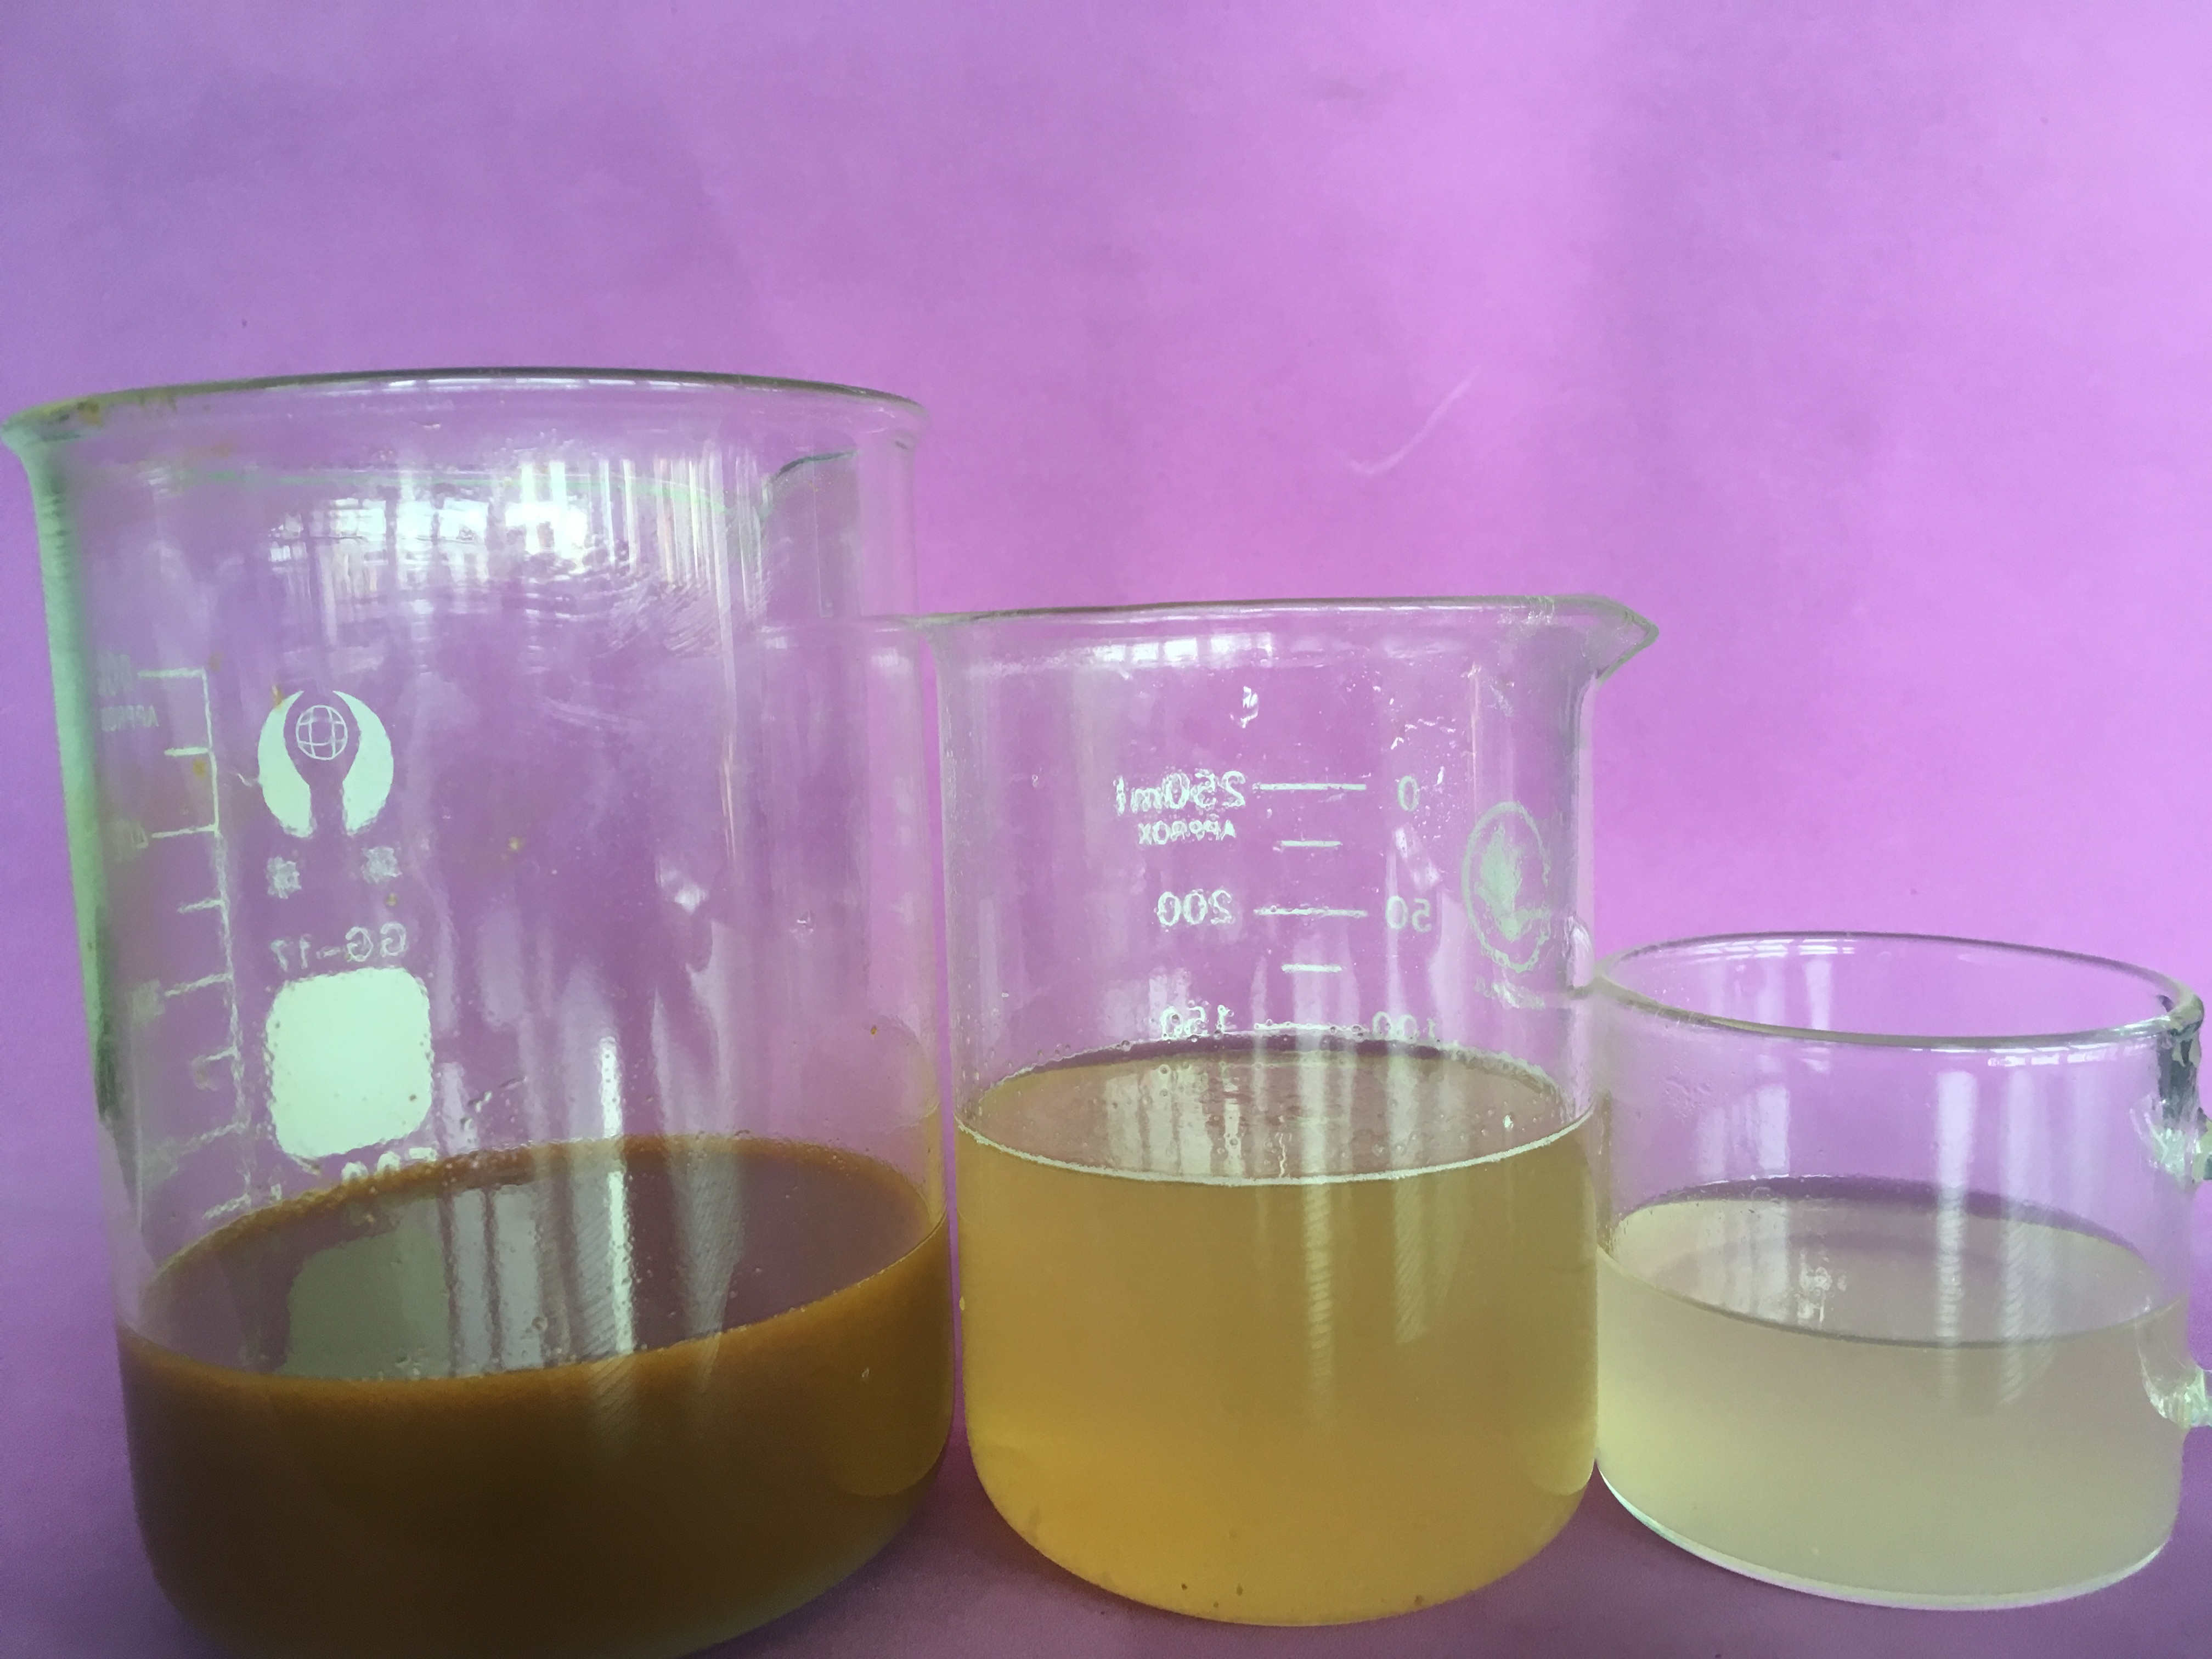 聚合氯化铝 无色或浅黄色的固体。在水中溶解时，可以形成一种混浊的溶液。